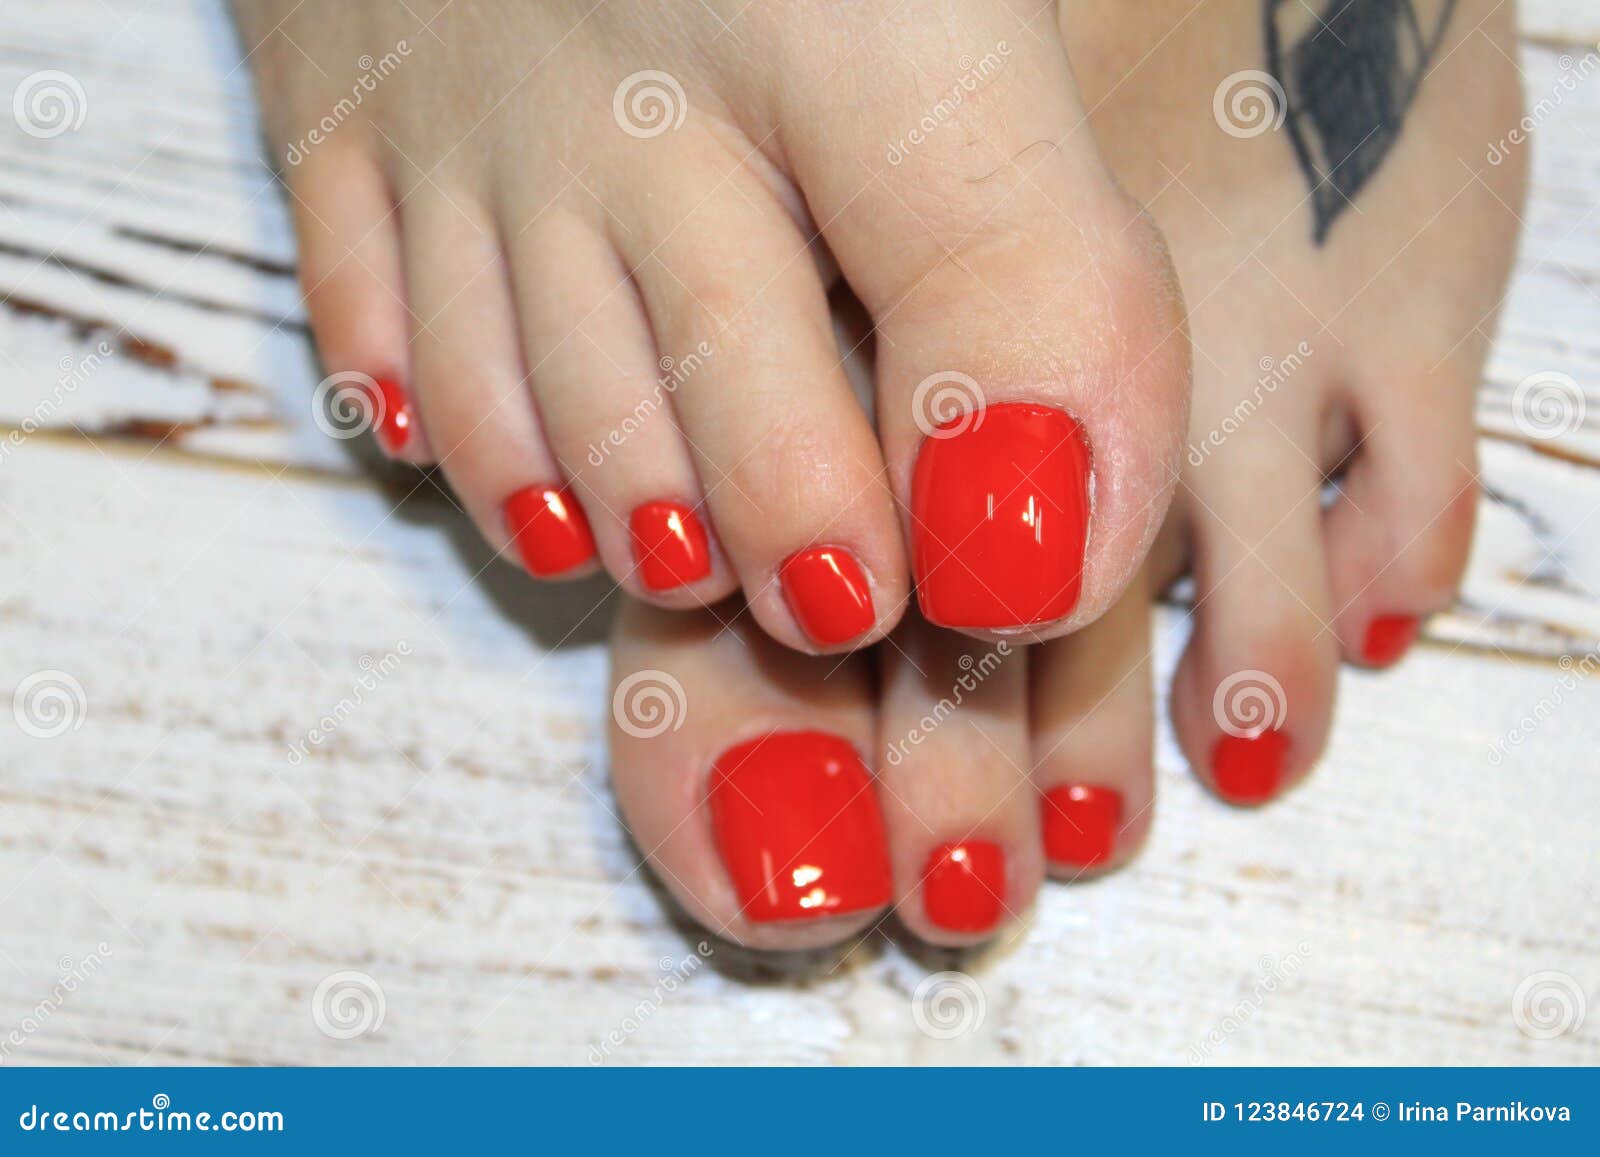 utilgivelig Information Egen Stylish red pedicure stock photo. Image of nails, elegant - 123846724